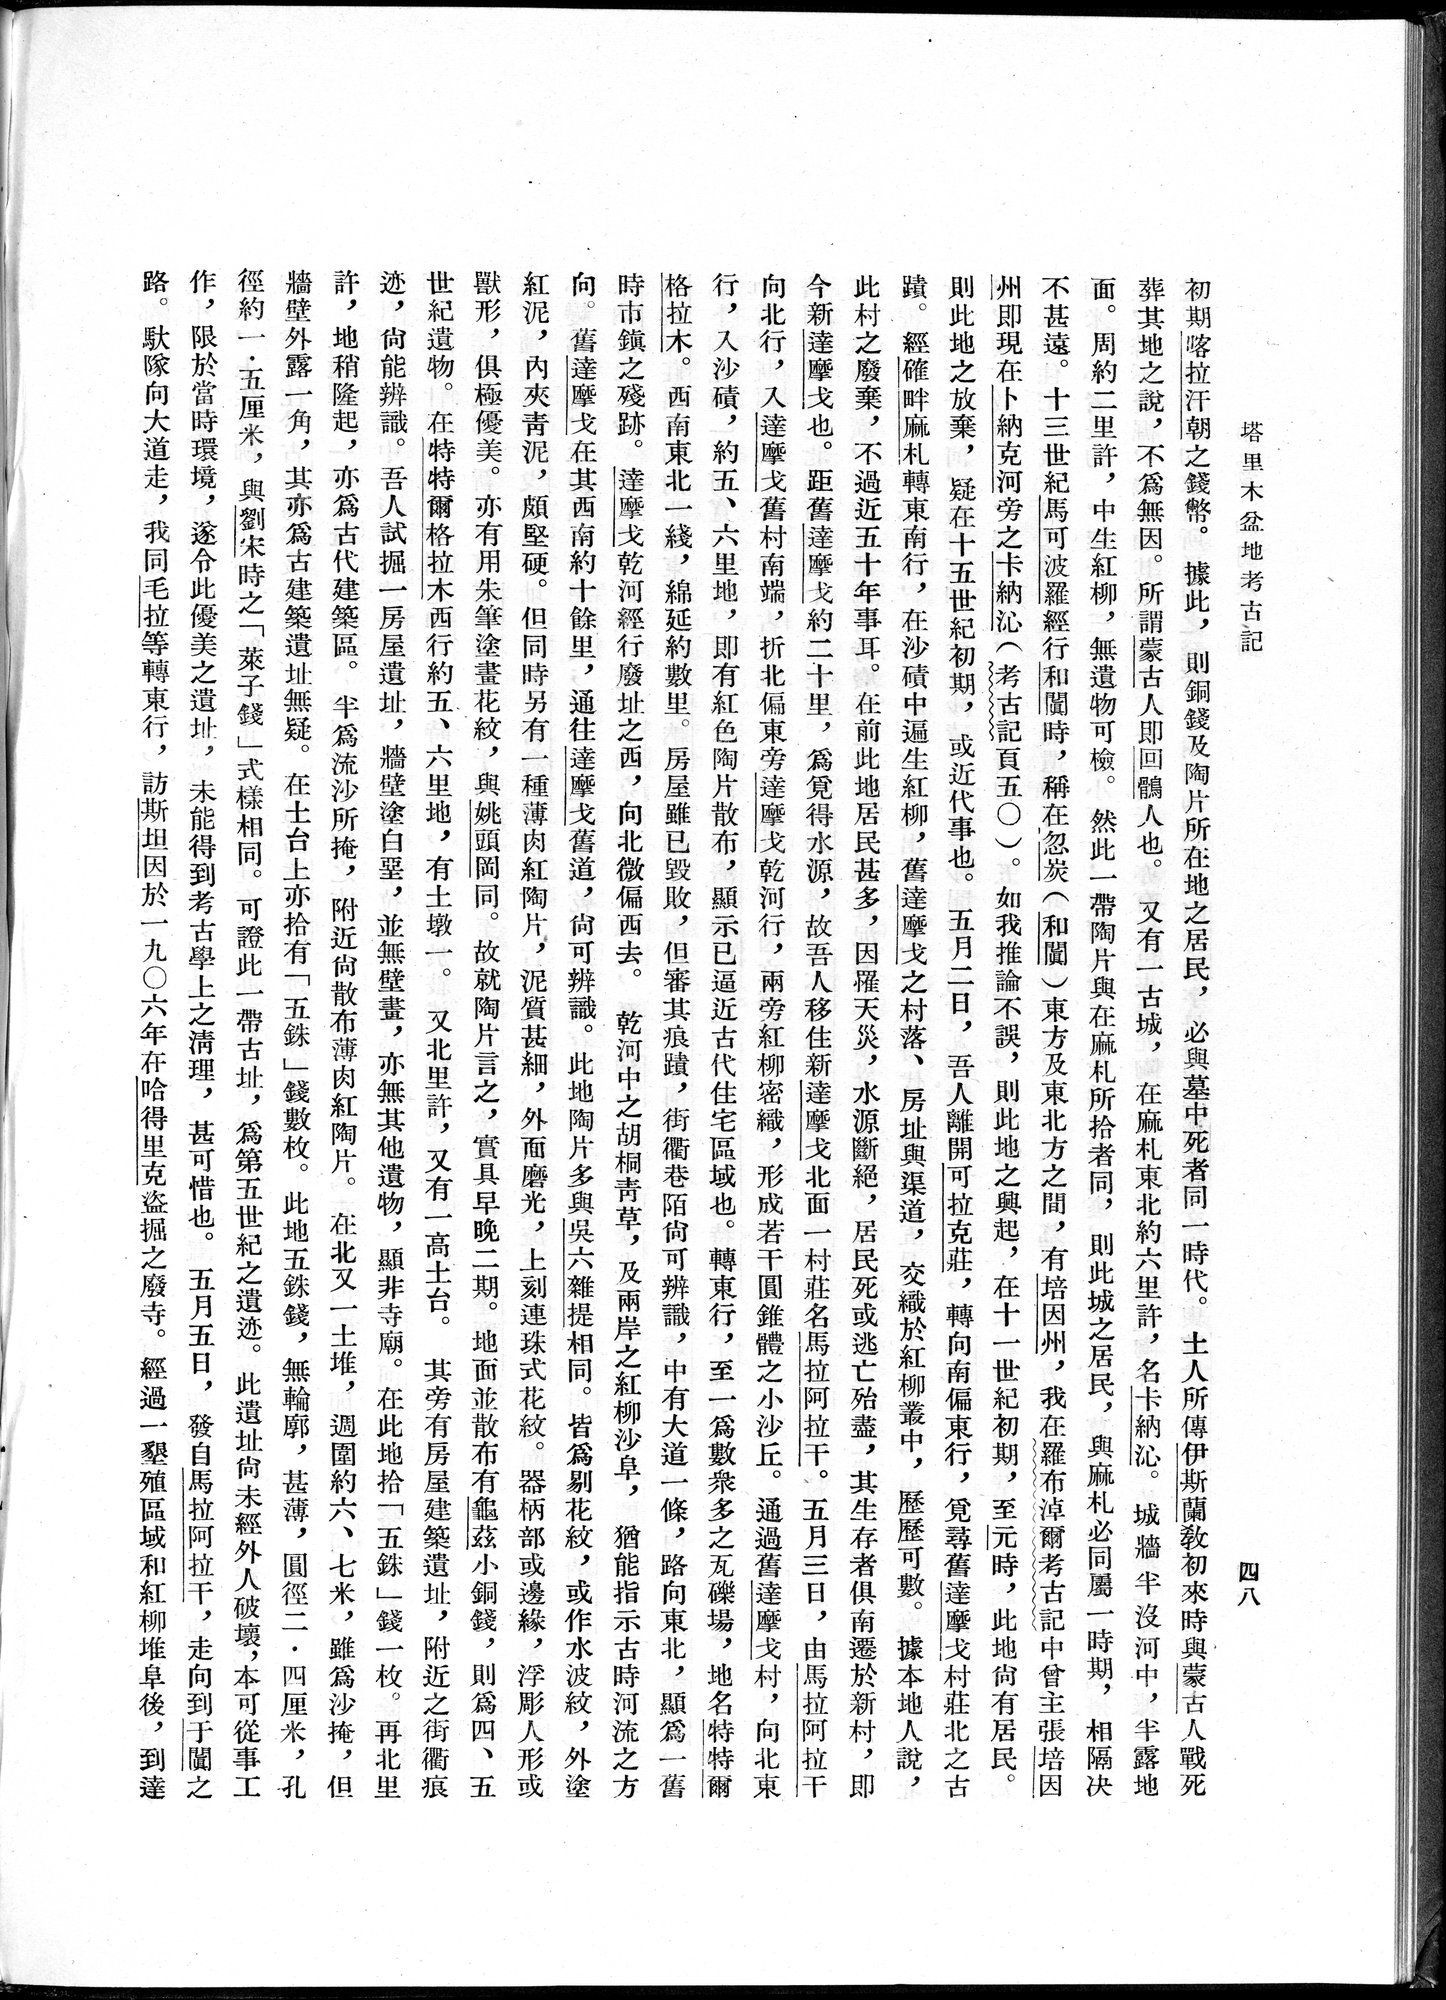 塔里木盆地考古記 : vol.1 / 72 ページ（白黒高解像度画像）